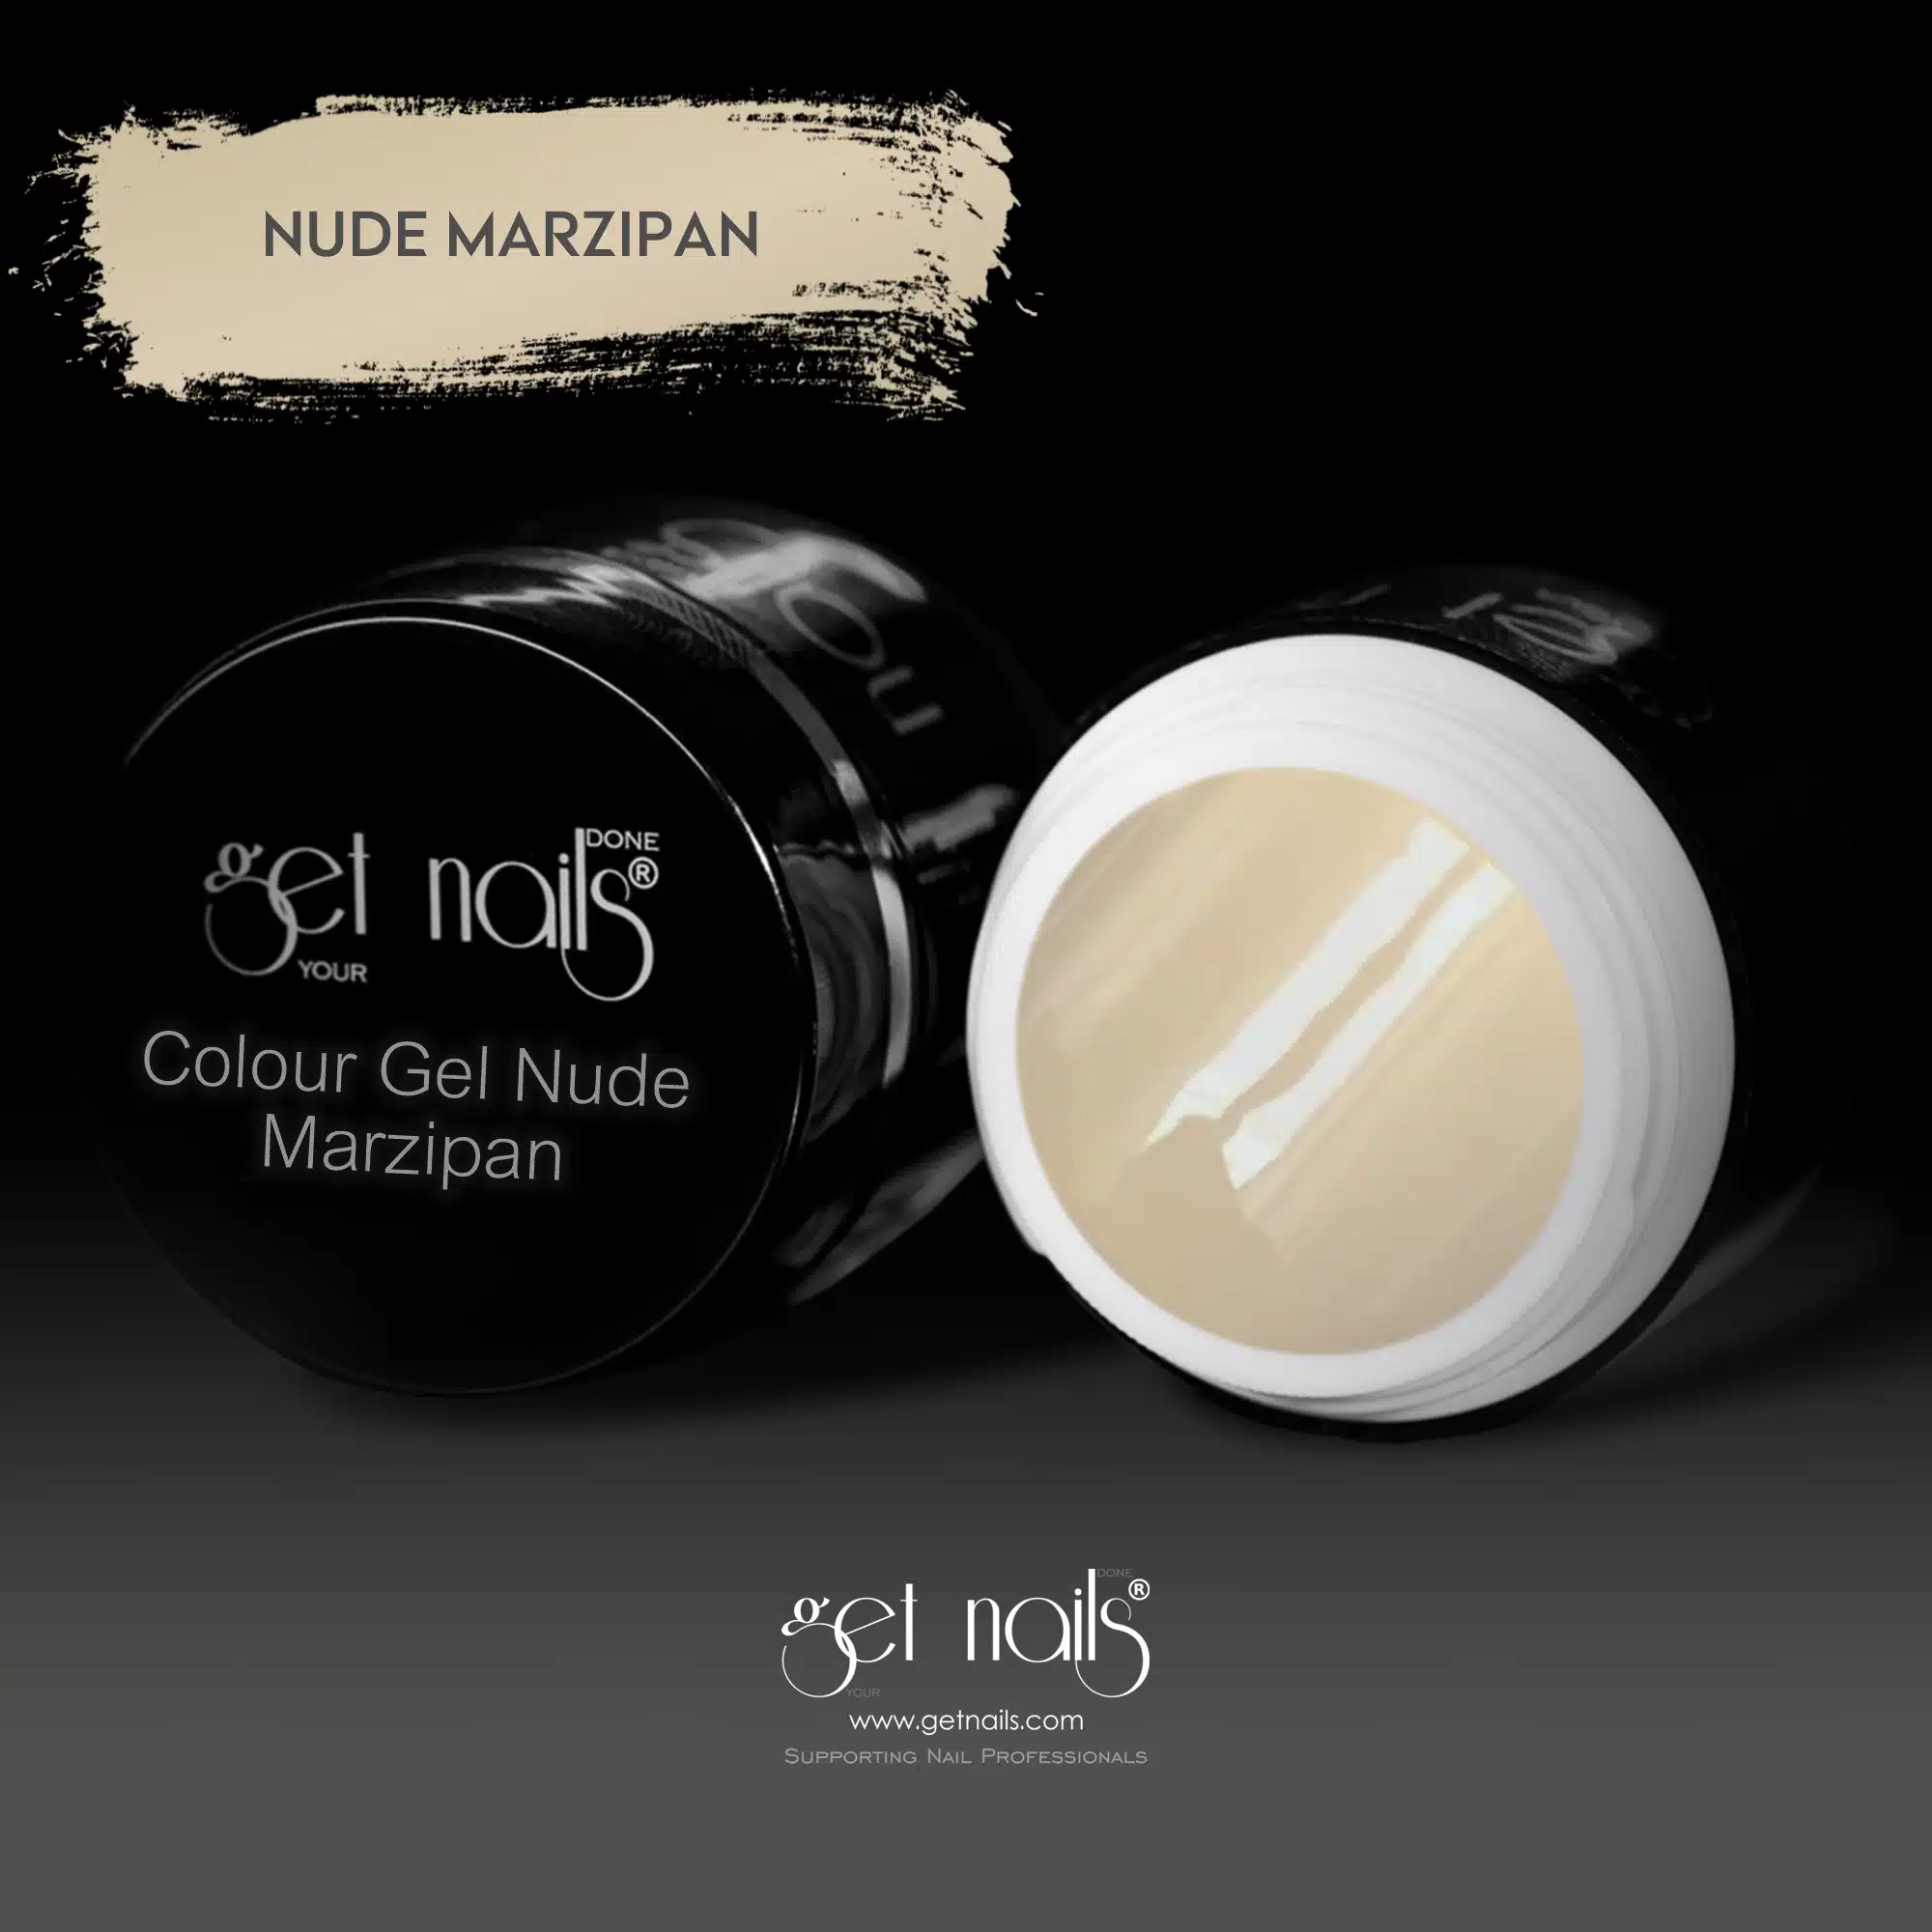 Get Nails Austria - Color Gel Nude Marcipan 5g